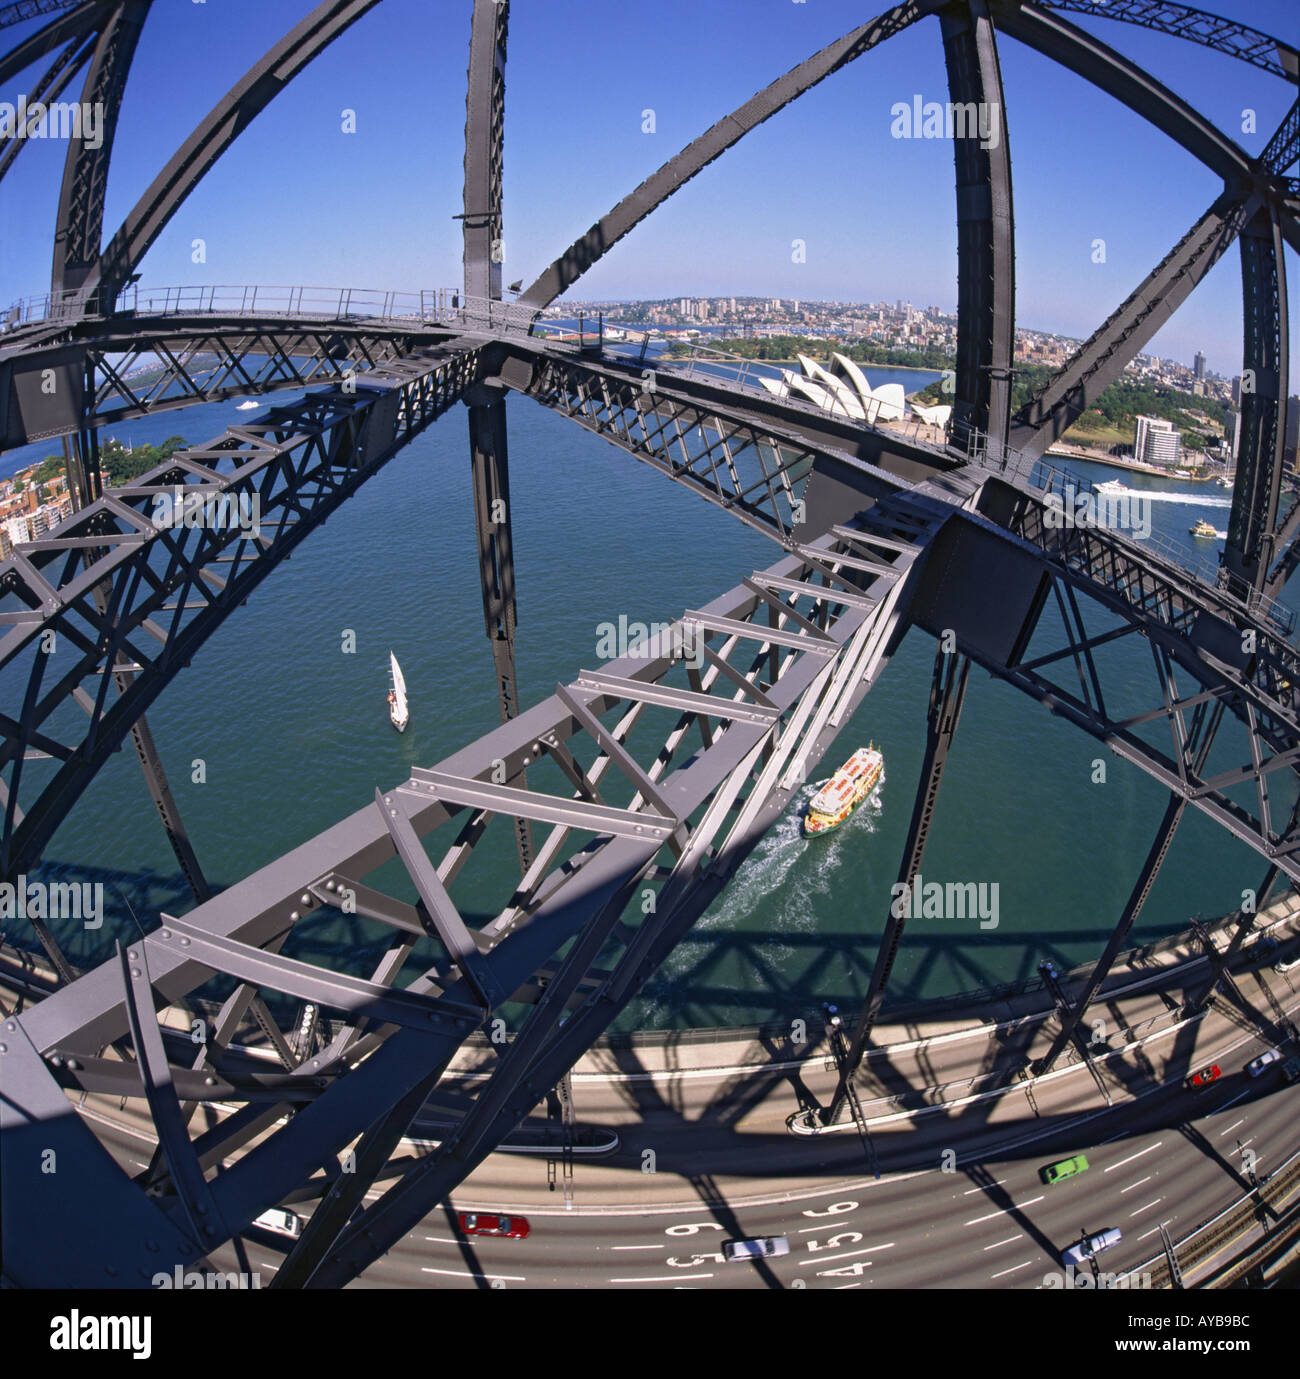 Affichage dans la poutre métallique superstructure de Sydney Harbour Bridge avec Bennelong Point et Opera House Sydney Australie Banque D'Images